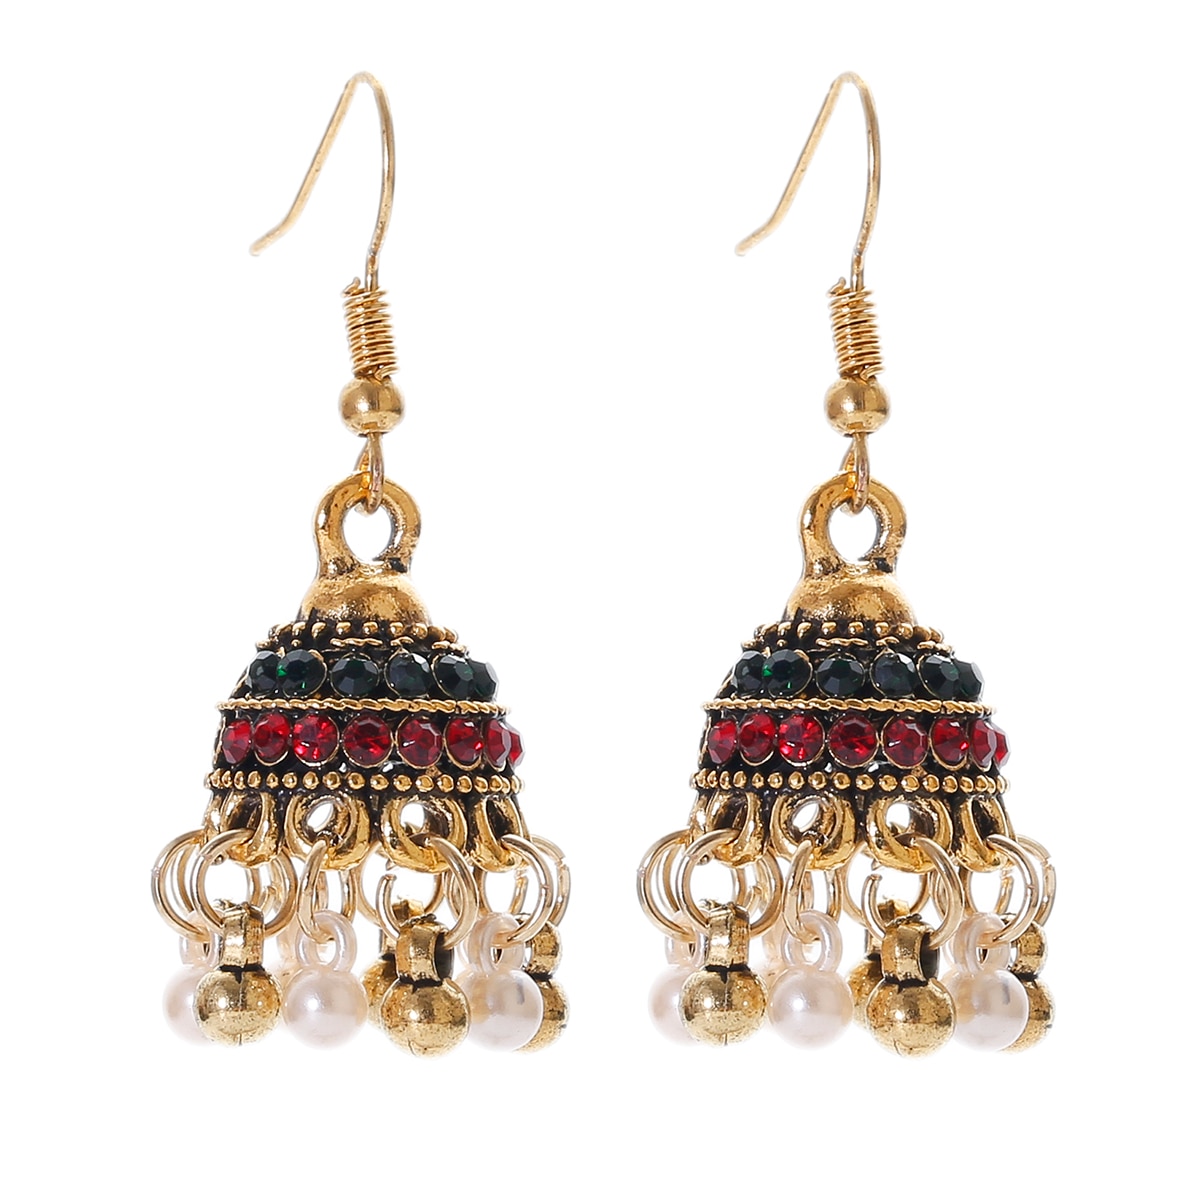 Retro-Classic-Small-Bell-CZ-Earrings-Women39s-Ethnic-Pearl-Tassel-Earrings-Piercing-Wedding-Jewelry--3256804108684137-5